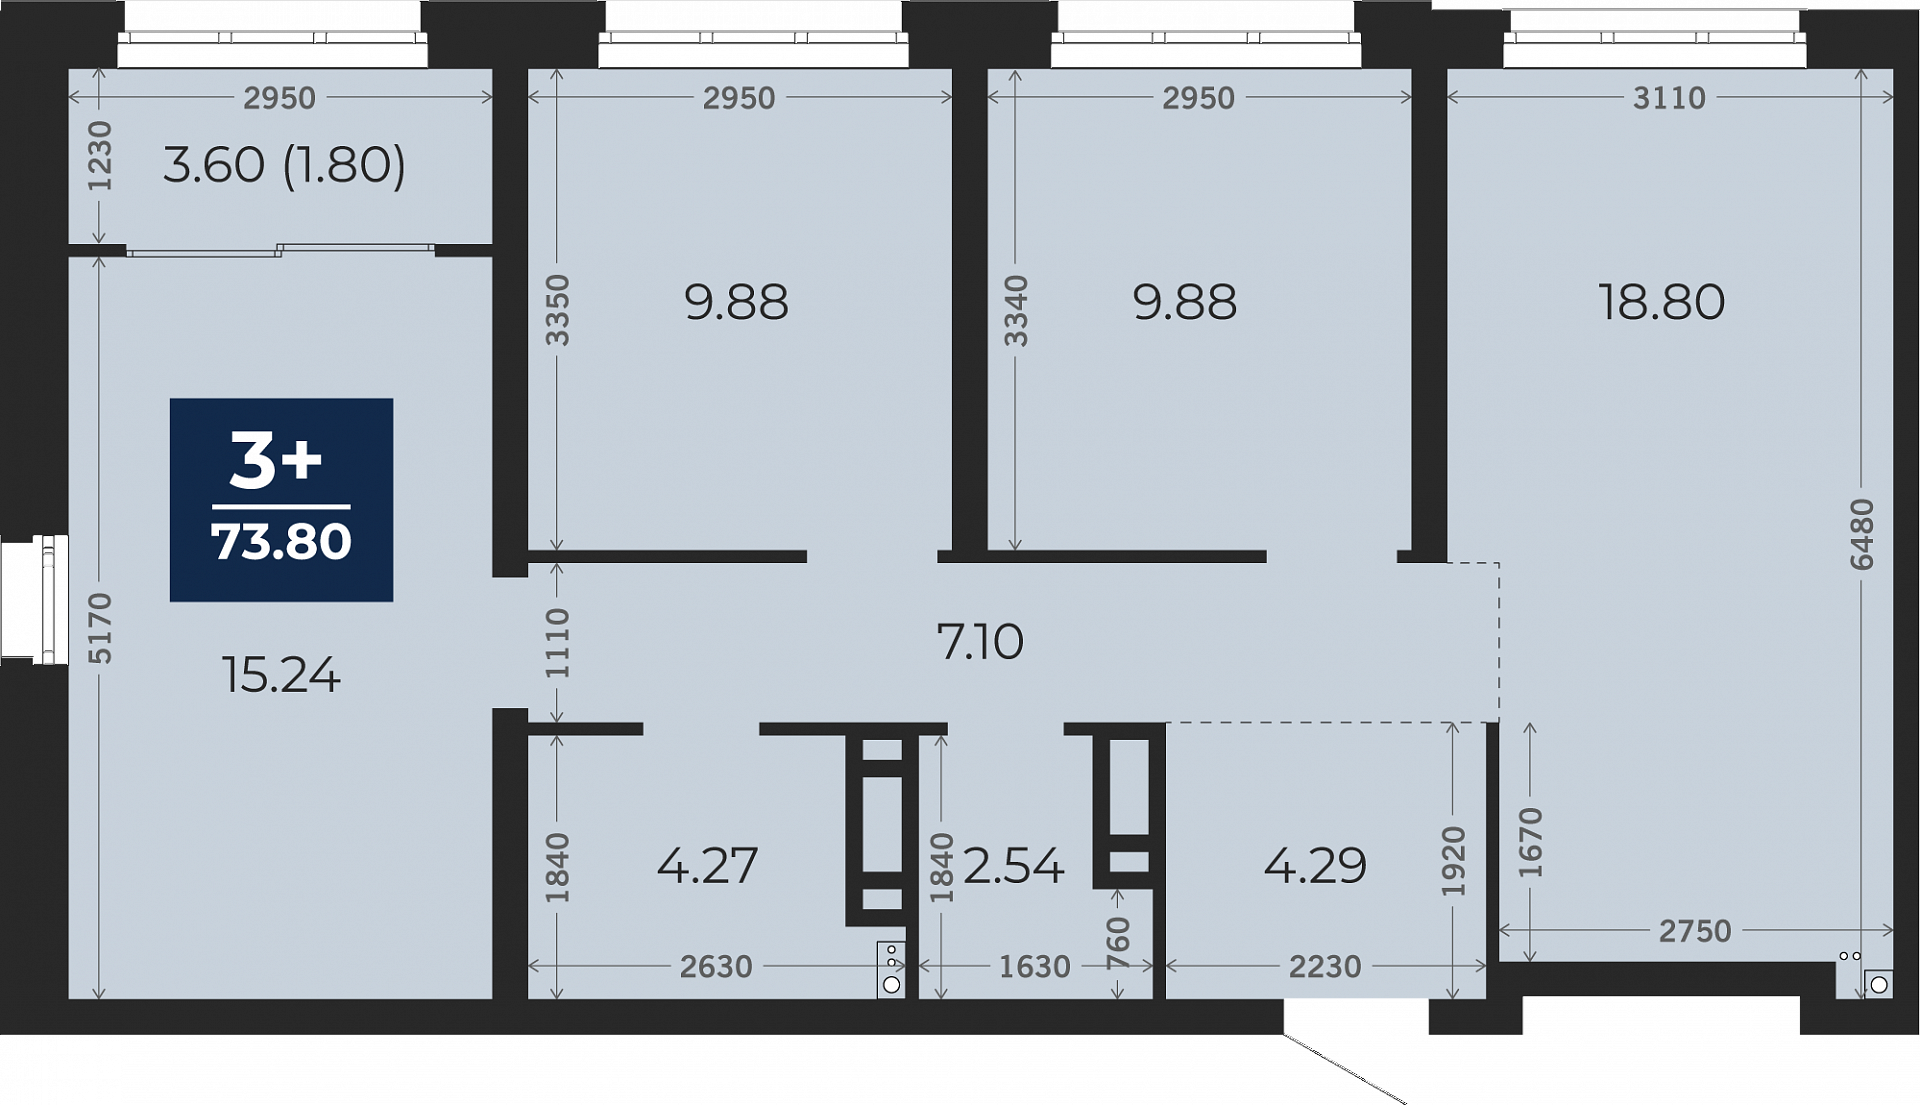 Квартира № 560, 3-комнатная, 73.8 кв. м, 3 этаж